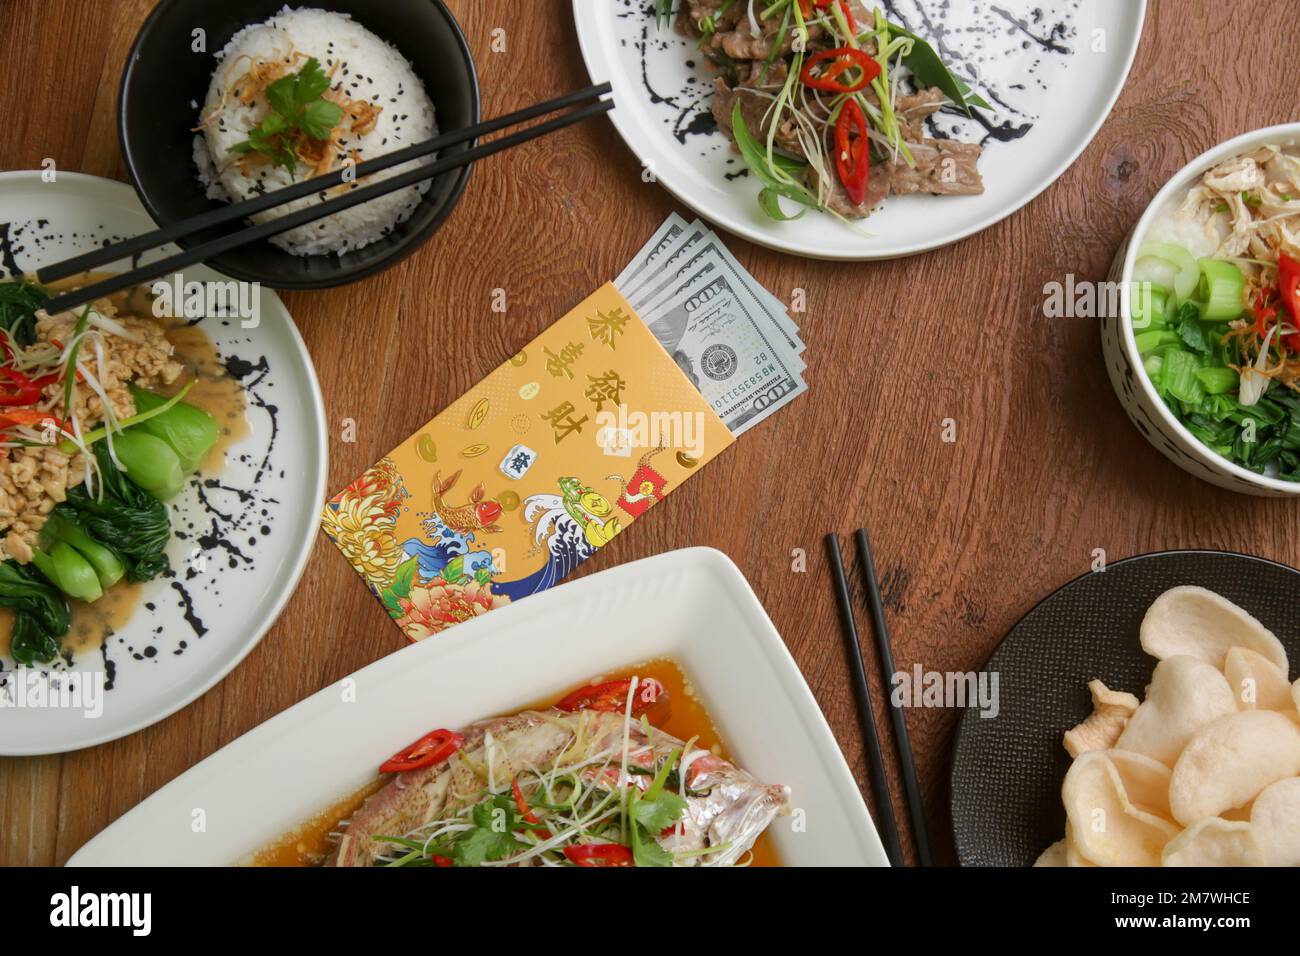 Cibo da mangiare a Capodanno lunare sul tavolo con busta dorata ripiena di soldi come segno di buona fortuna per il nuovo anno. Foto Stock